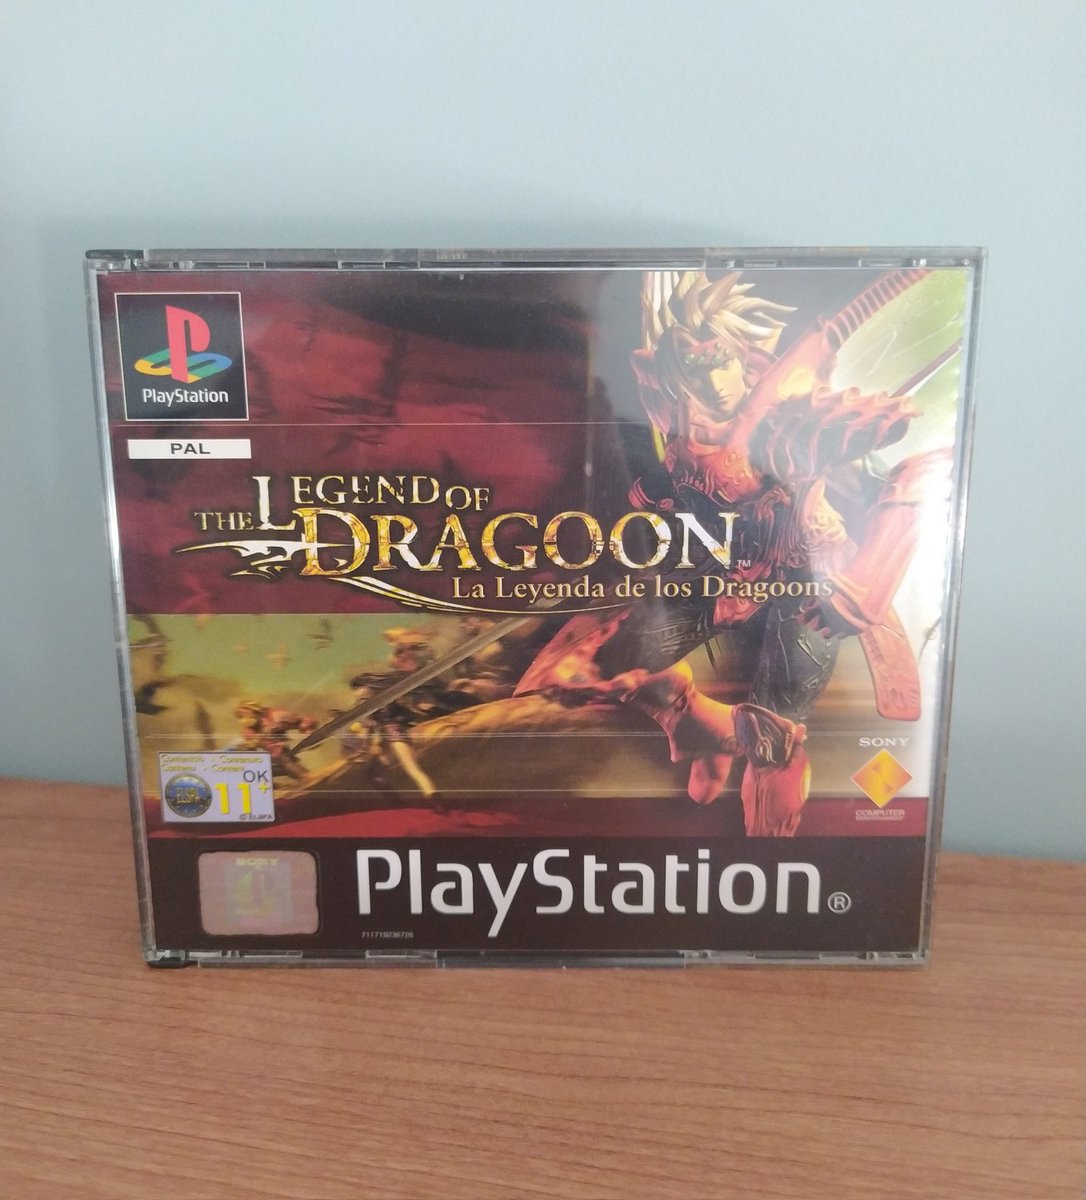 Hoy hace 24 años que este juego se lanzó en Japón!!!
Muy infravalorado para mi gusto es un juegarral!! 
#Thelegendofdragoon 🔥
#PlayStation 🎮